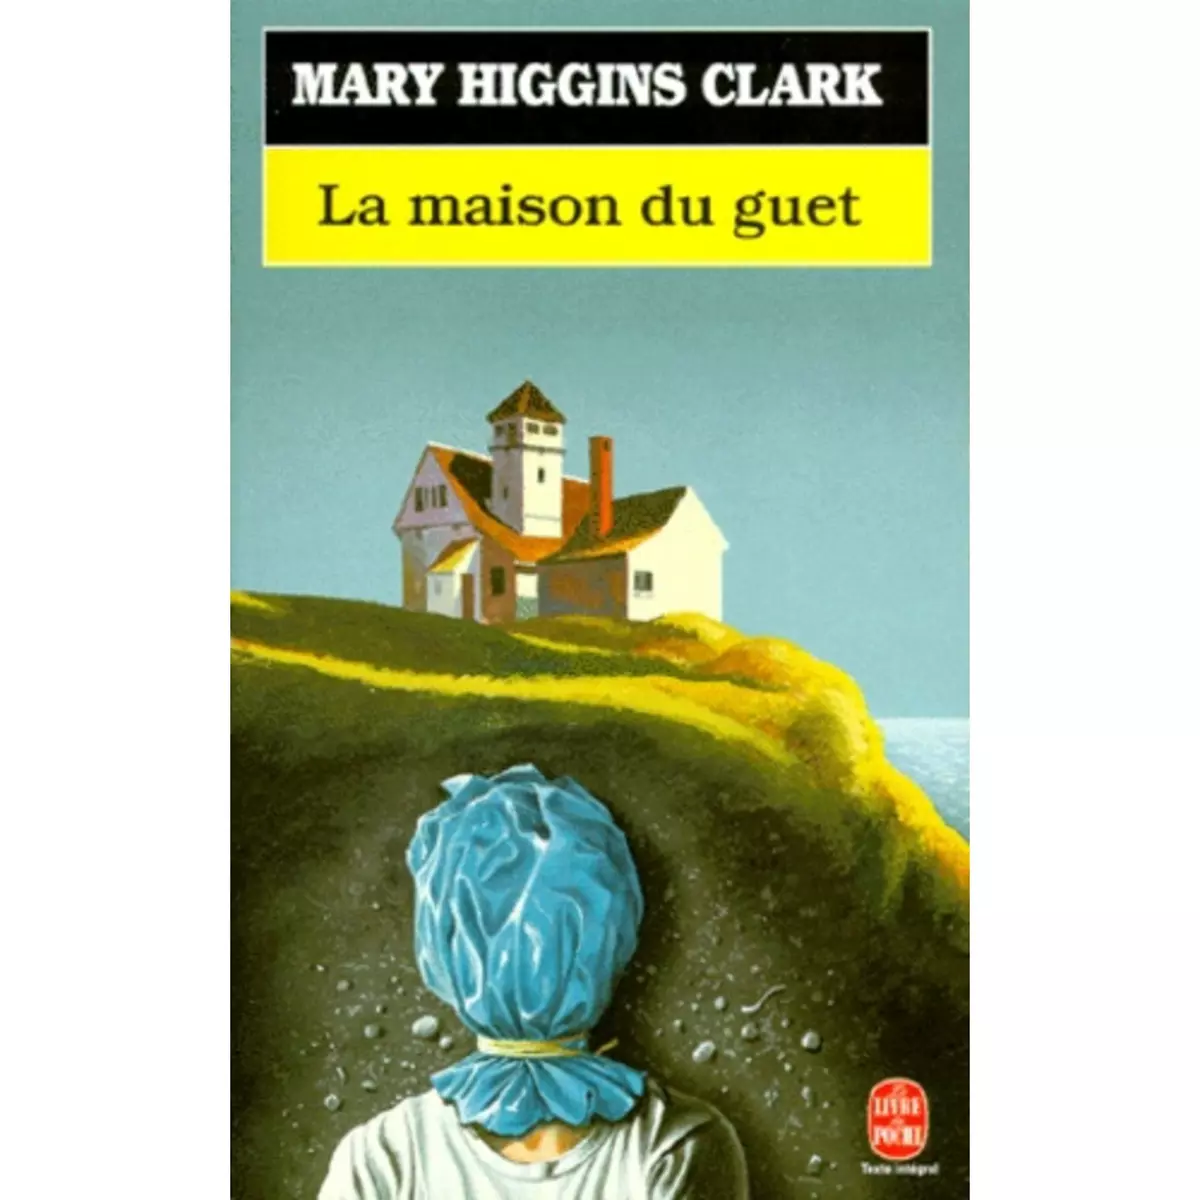  LA MAISON DU GUET, Higgins Clark Mary